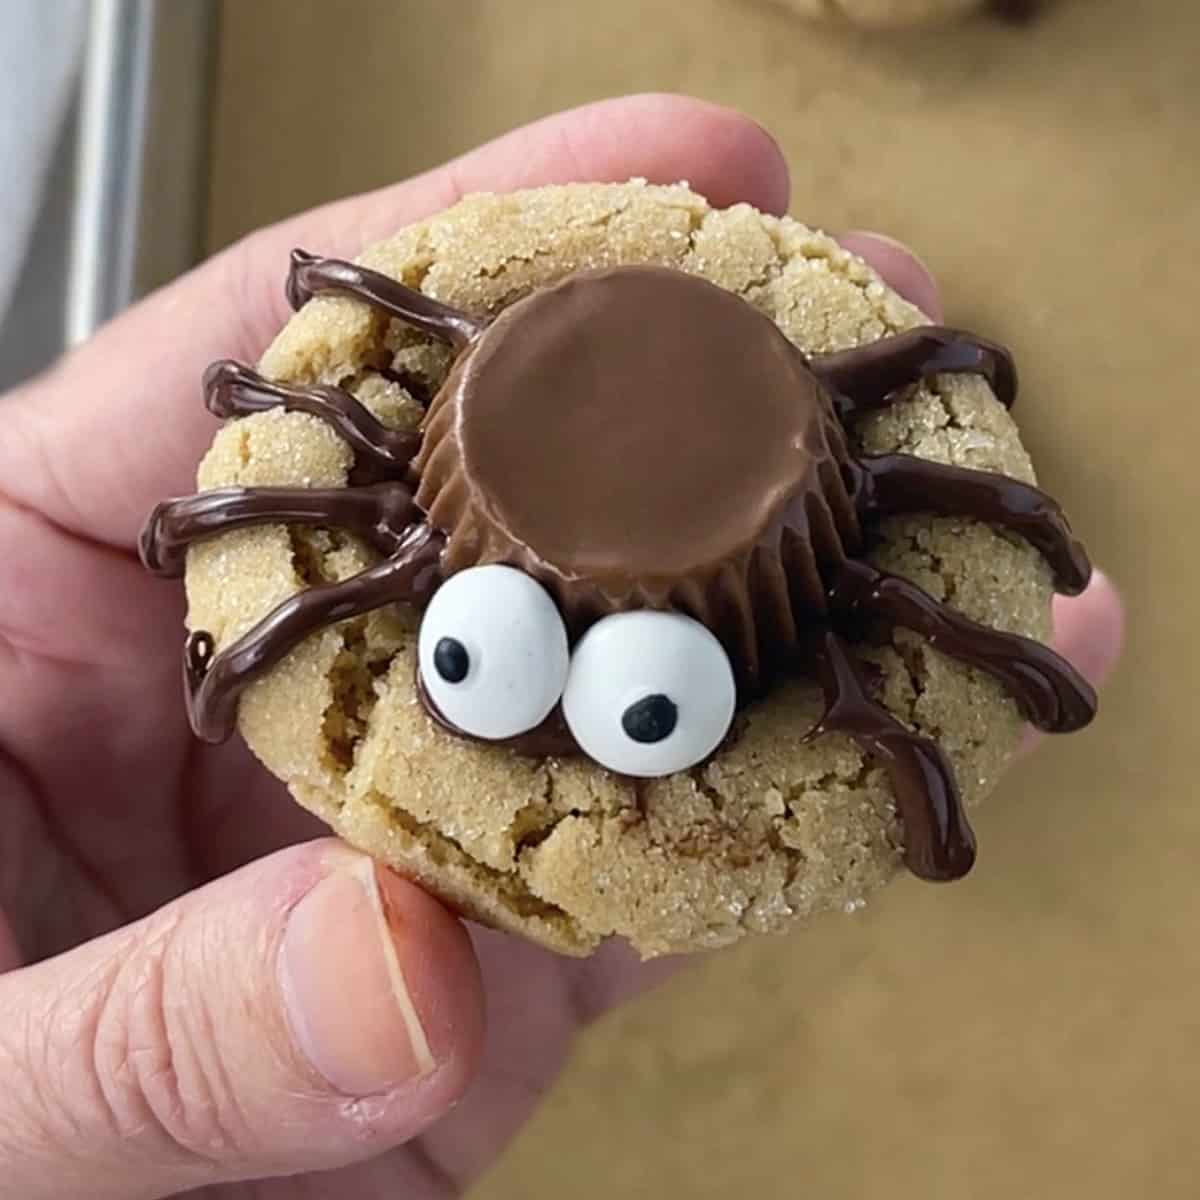 Cute spider cookies